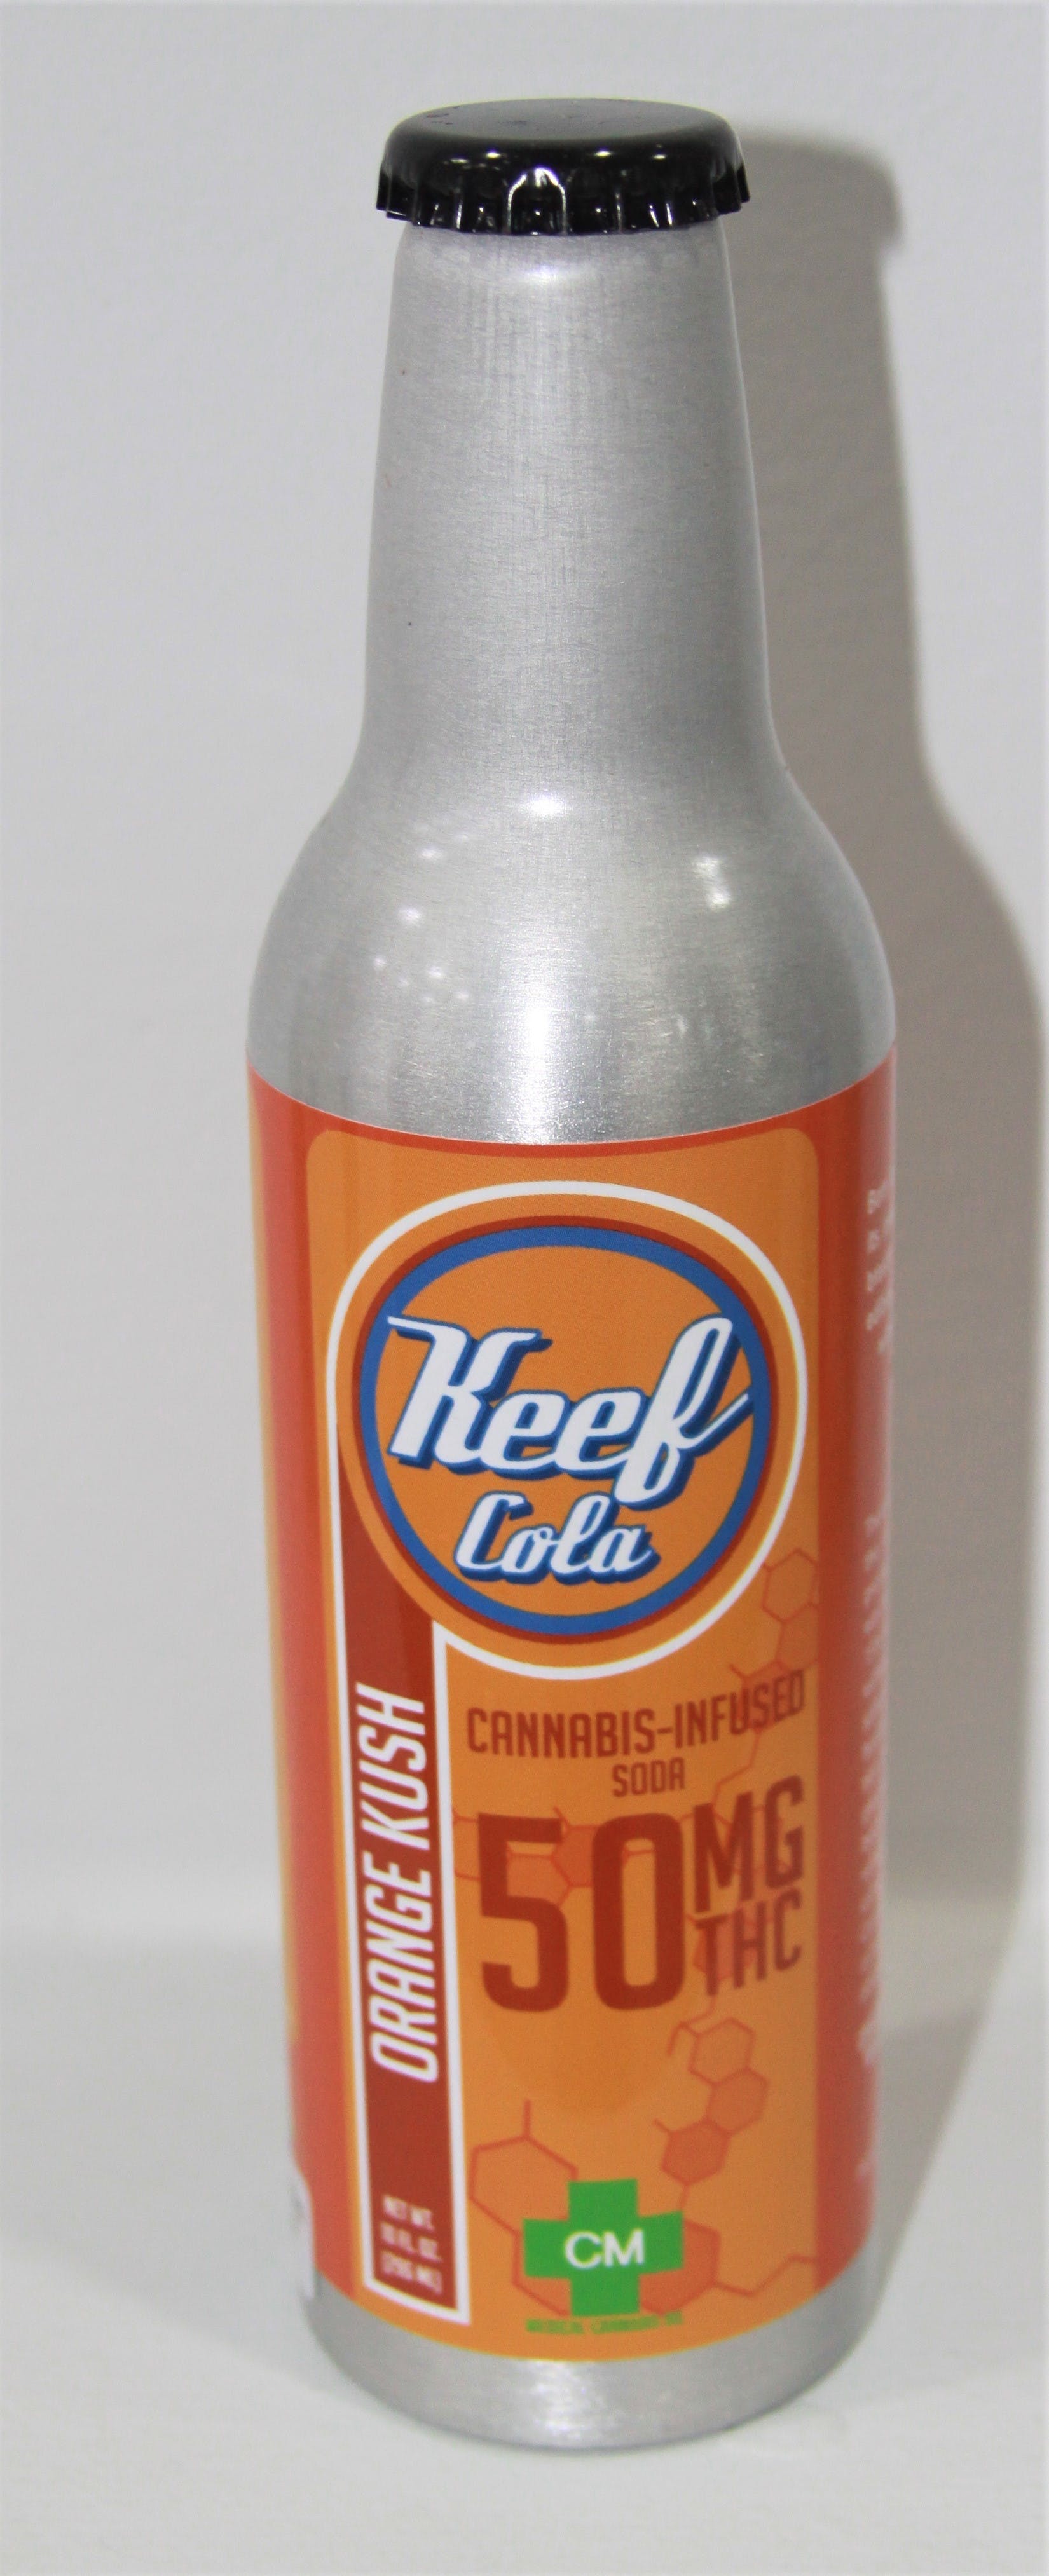 drink-keef-cola-orange-50mg